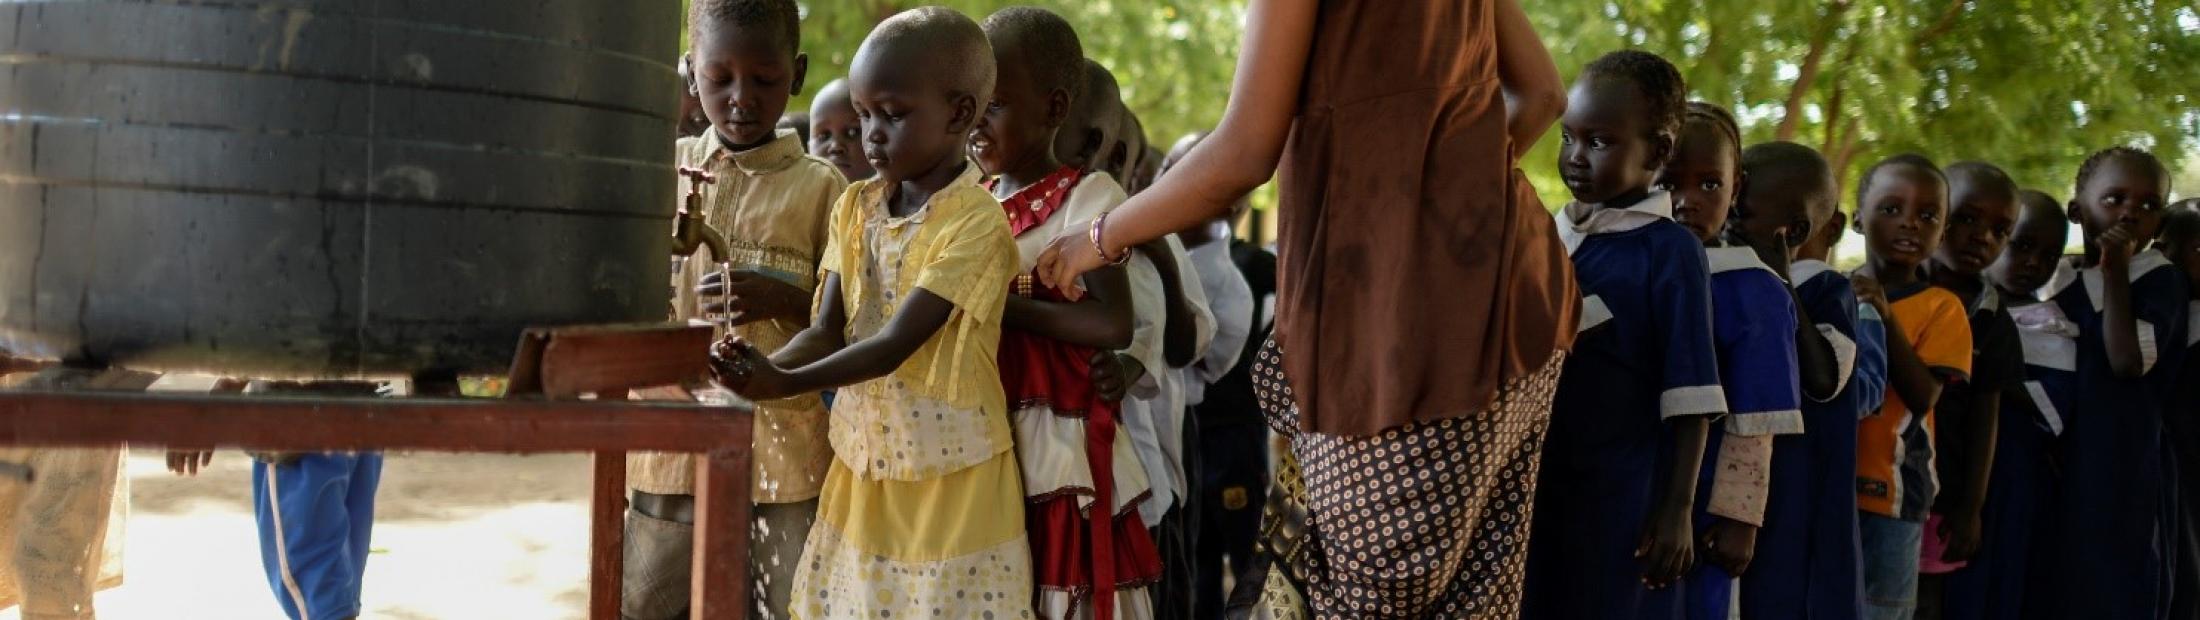 Agua, saneamiento y protección para los refugiados sursudaneses en Uganda 